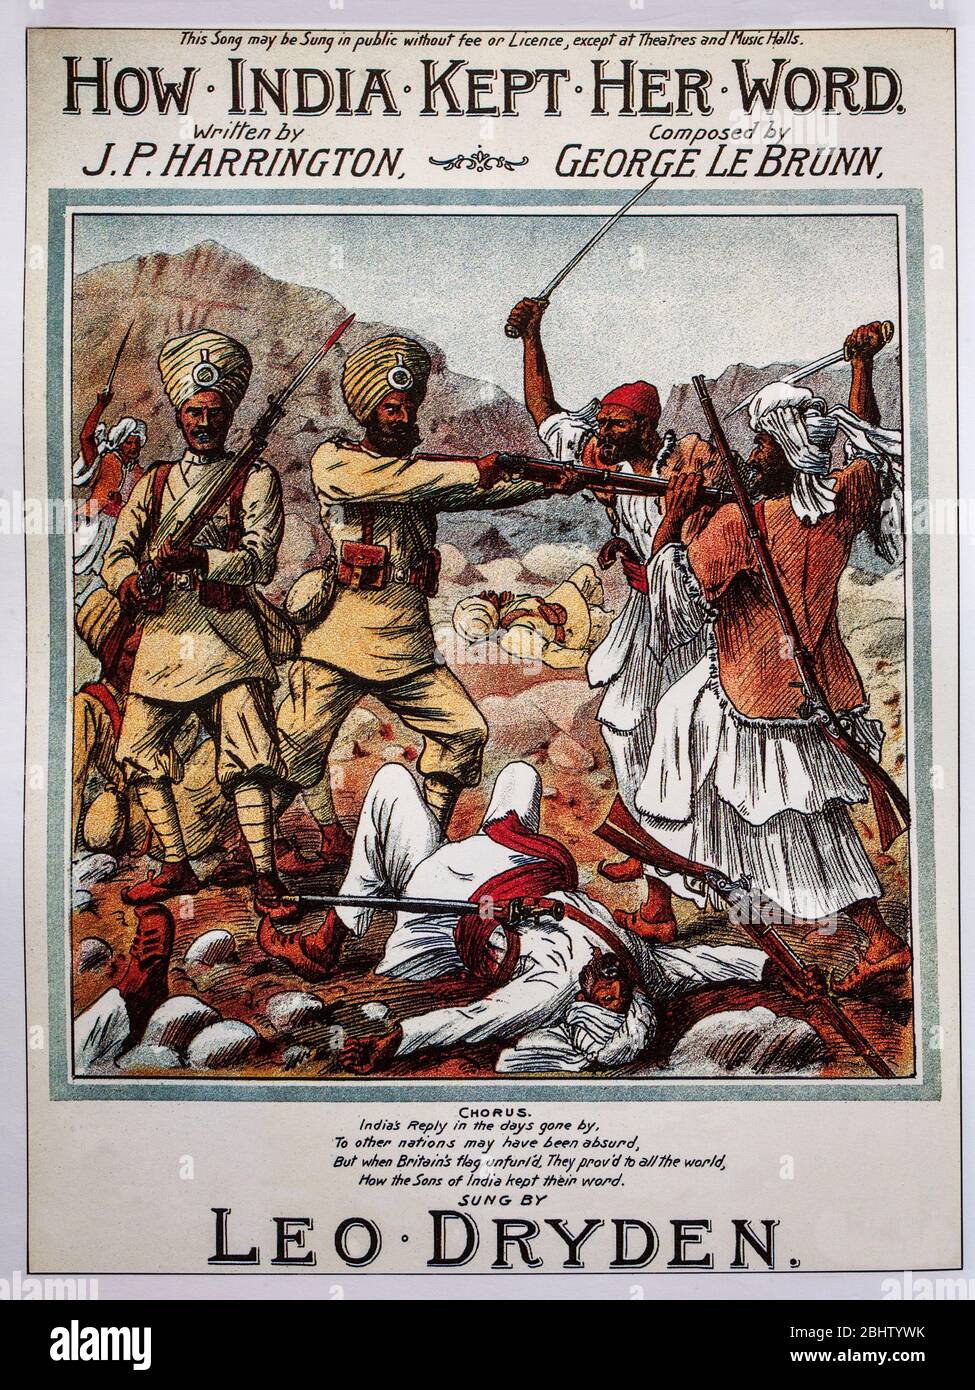 Copertina del XIX secolo con musica di sottofondo che esalta la fedeltà dei soldati indiani sotto il comando britannico durante il Raj britannico. Foto Stock